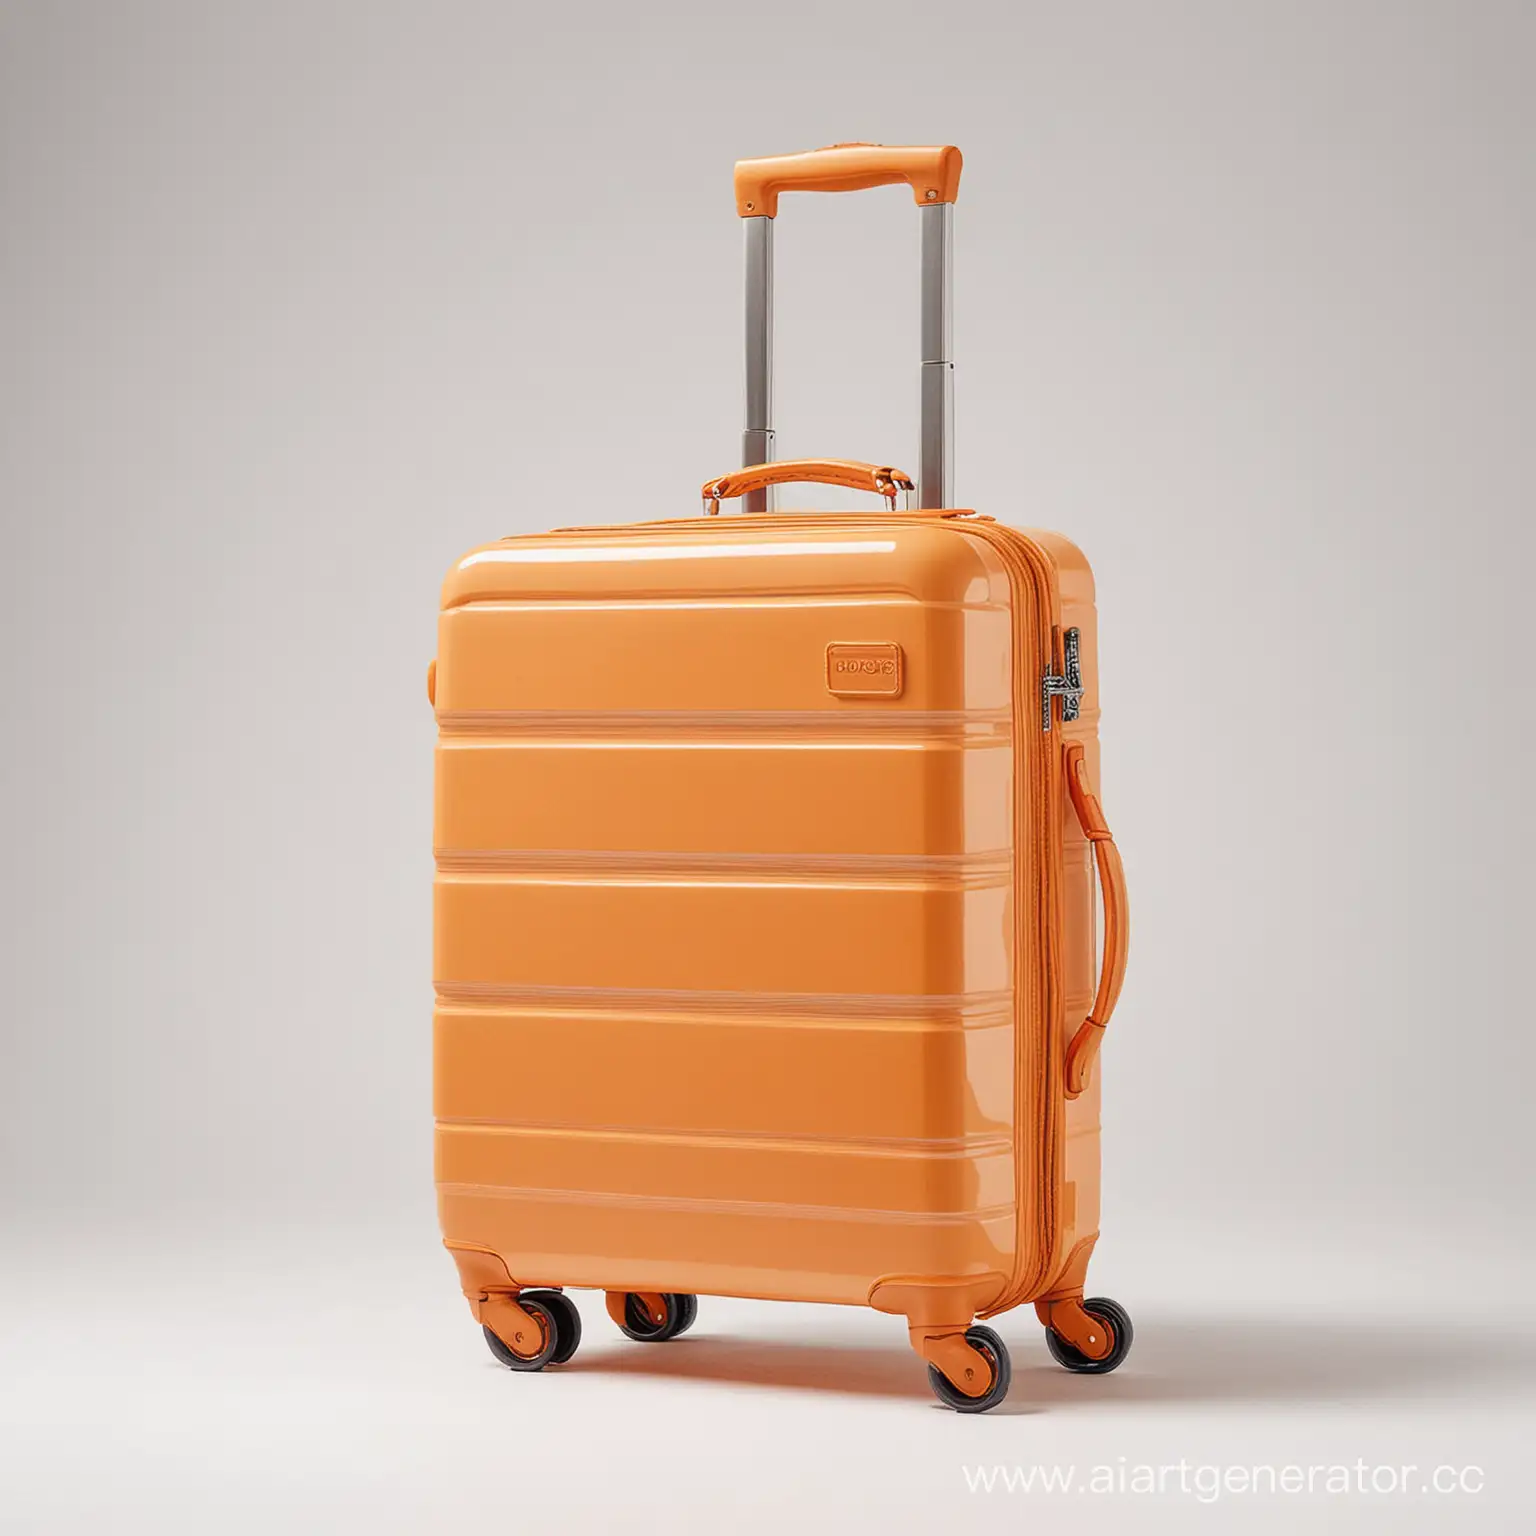 Orange-Suitcase-on-Wheels-Against-White-Background